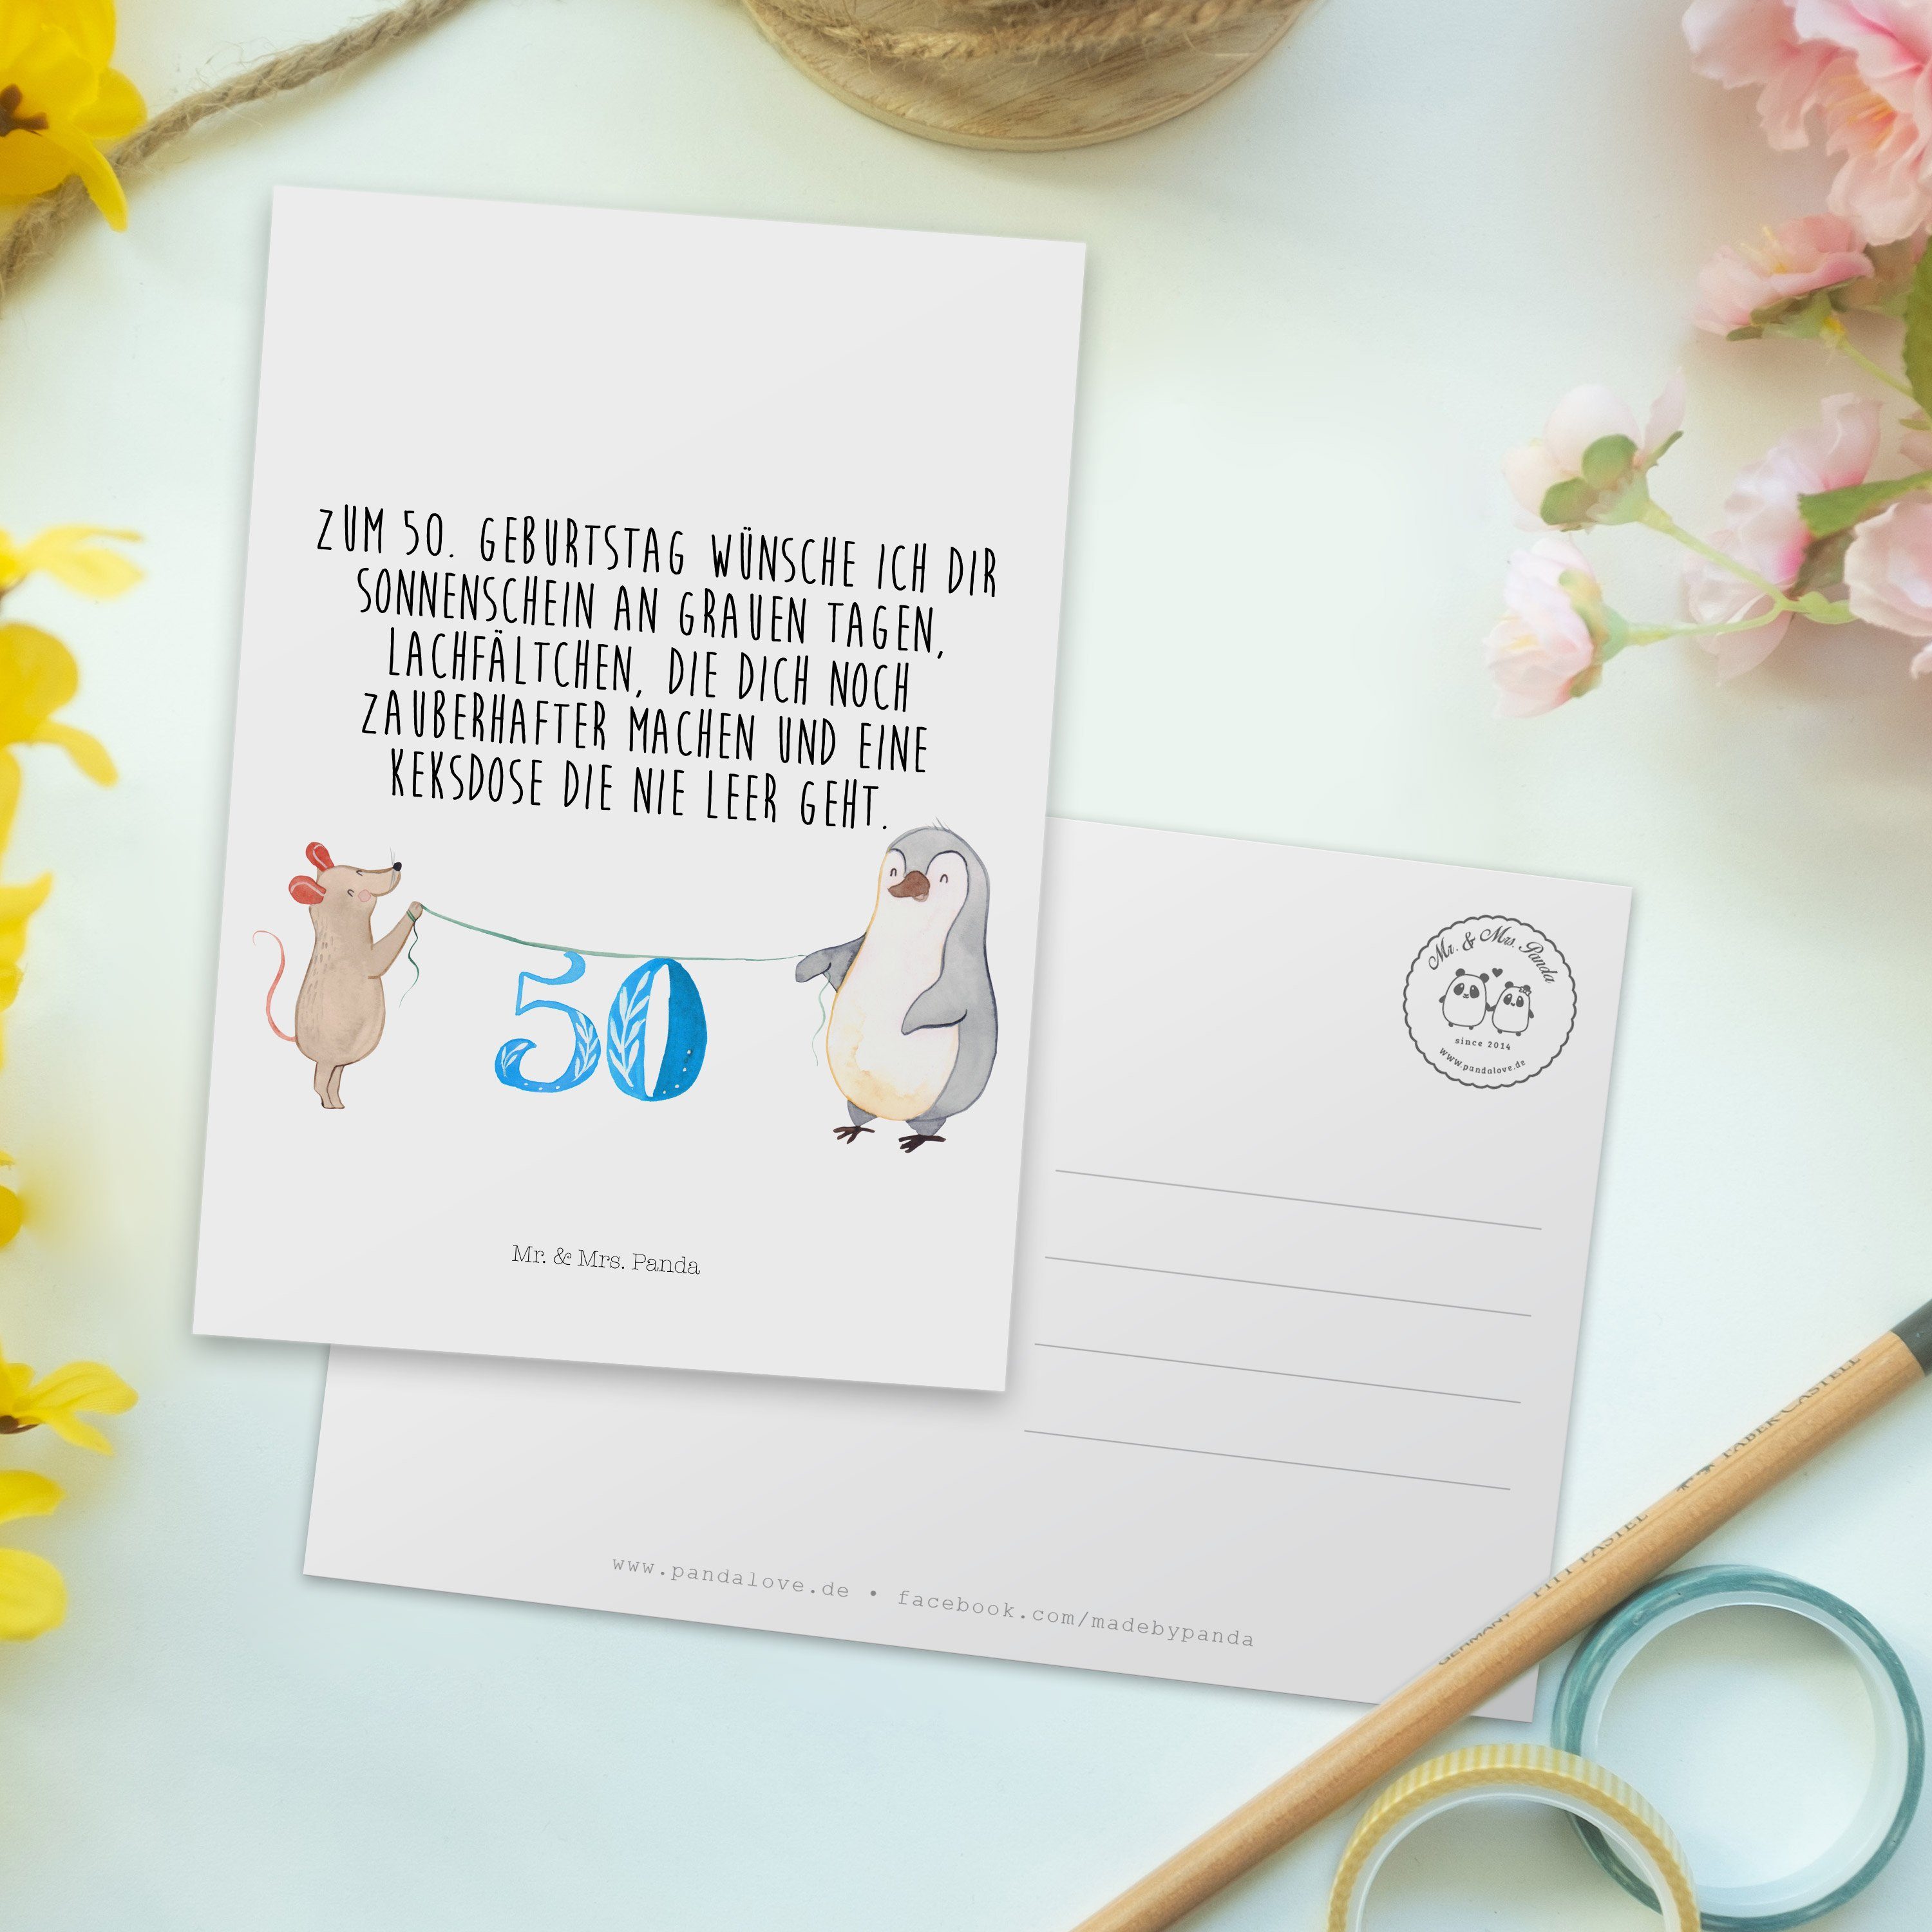 Mr. & Mrs. Panda Maus - Postkarte - Weiß Geschenk, Pinguin 50. Grußkarte, Geburtstag Ansichtskar